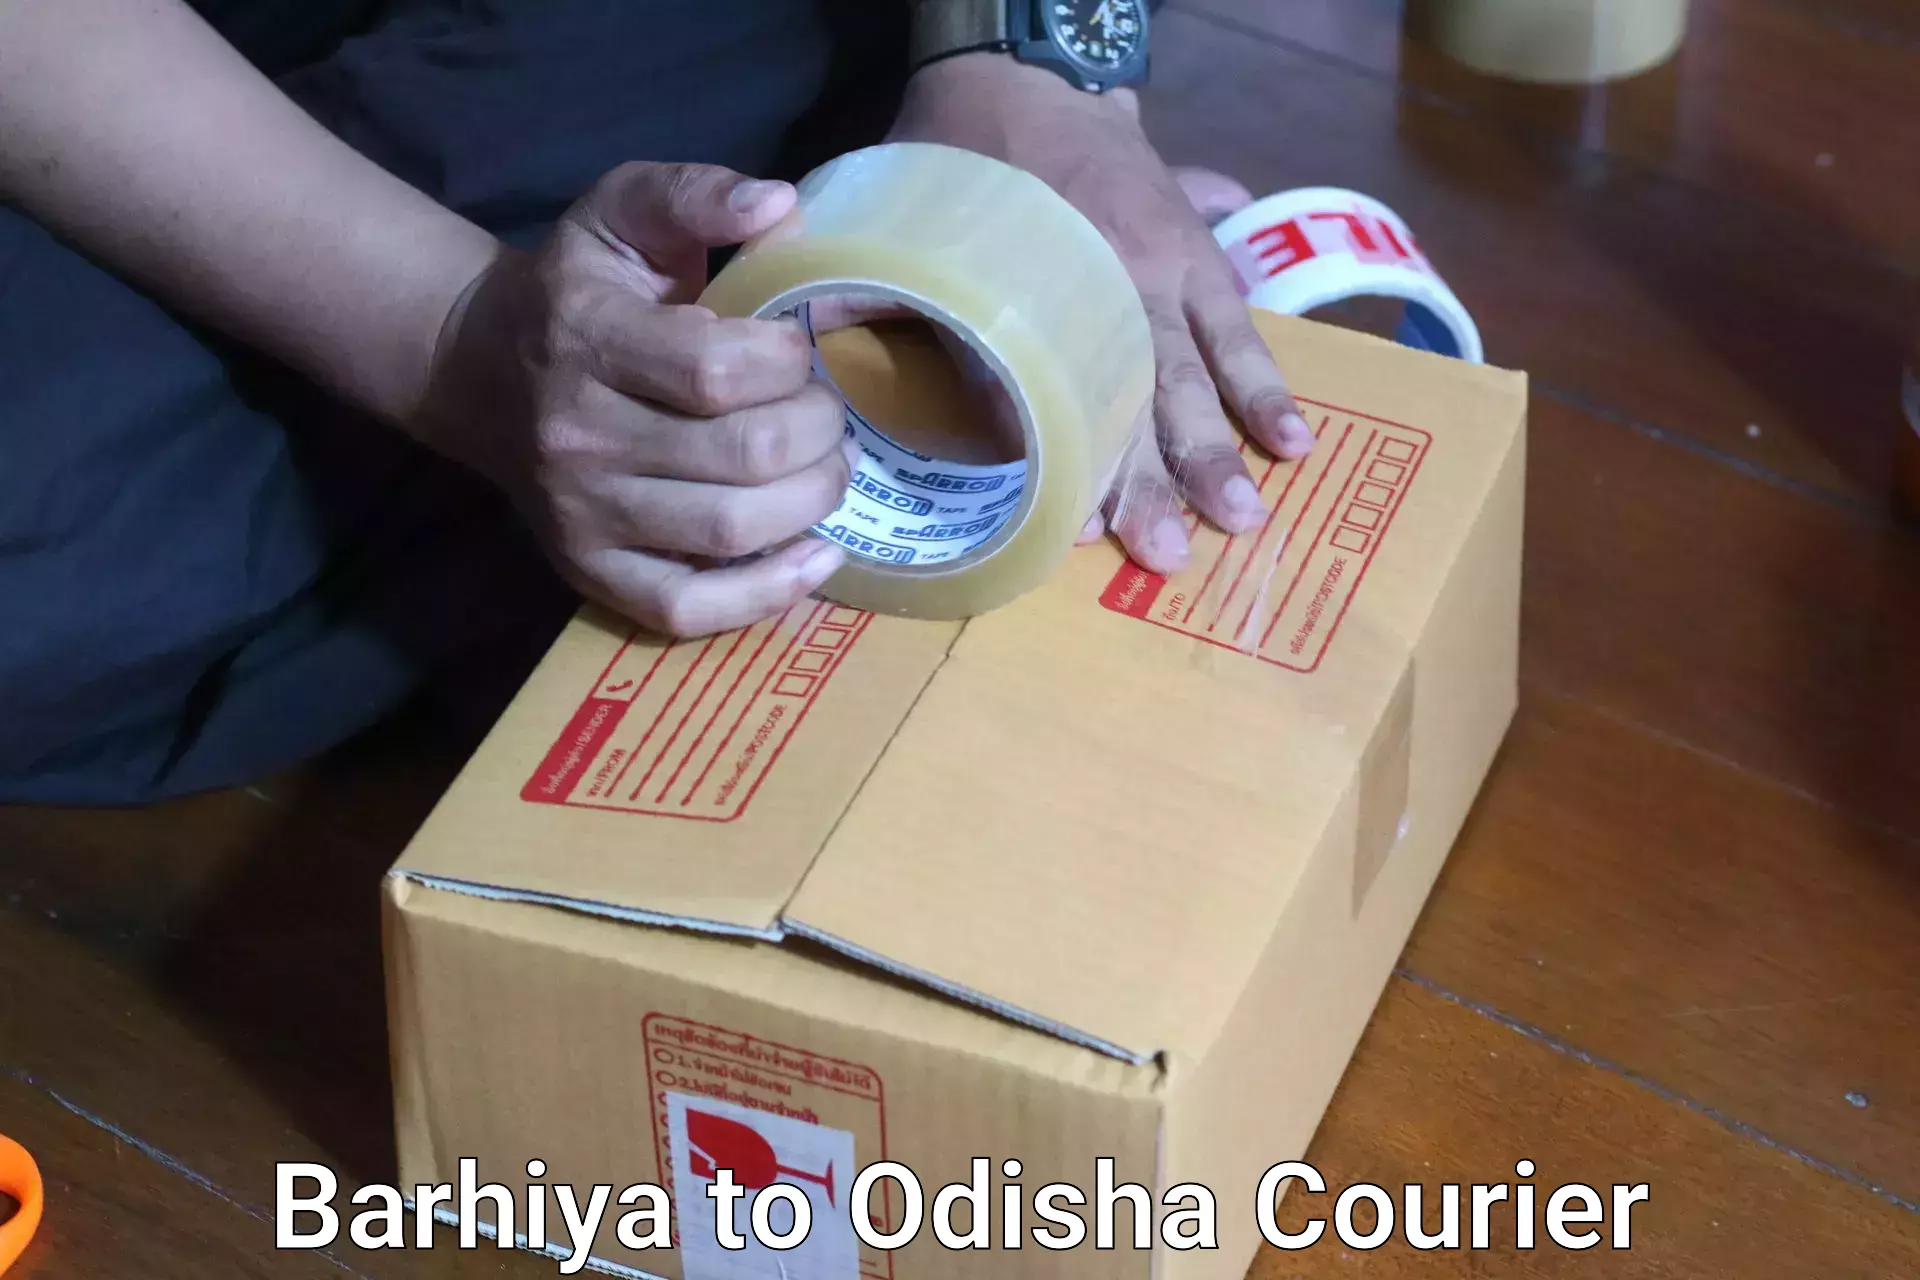 Digital baggage courier Barhiya to Sohela